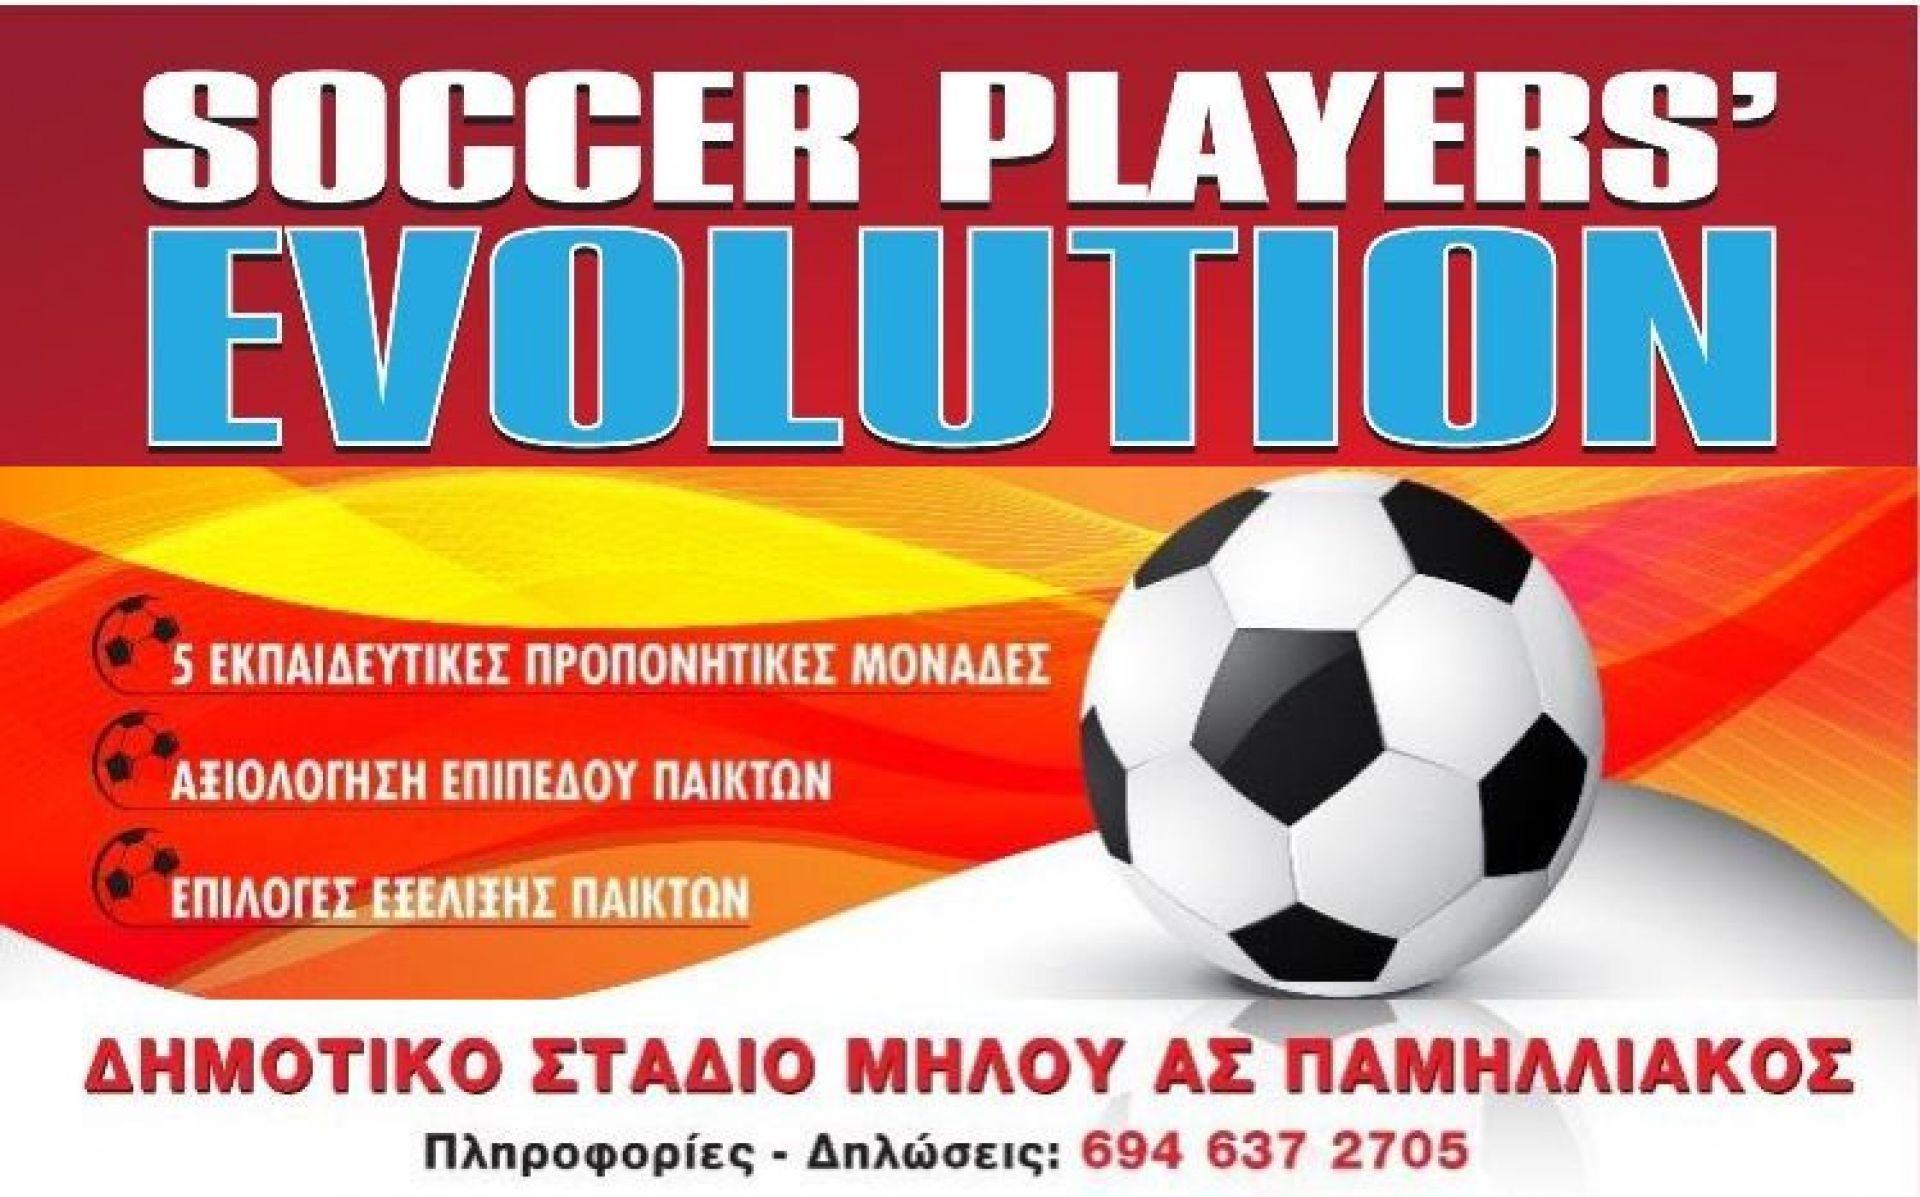 19-21 Ιουνίου στη Μήλο το «Soccer Player’s Evolution» με τους Αμανατίδη, Θέο και Κοψαχείλη